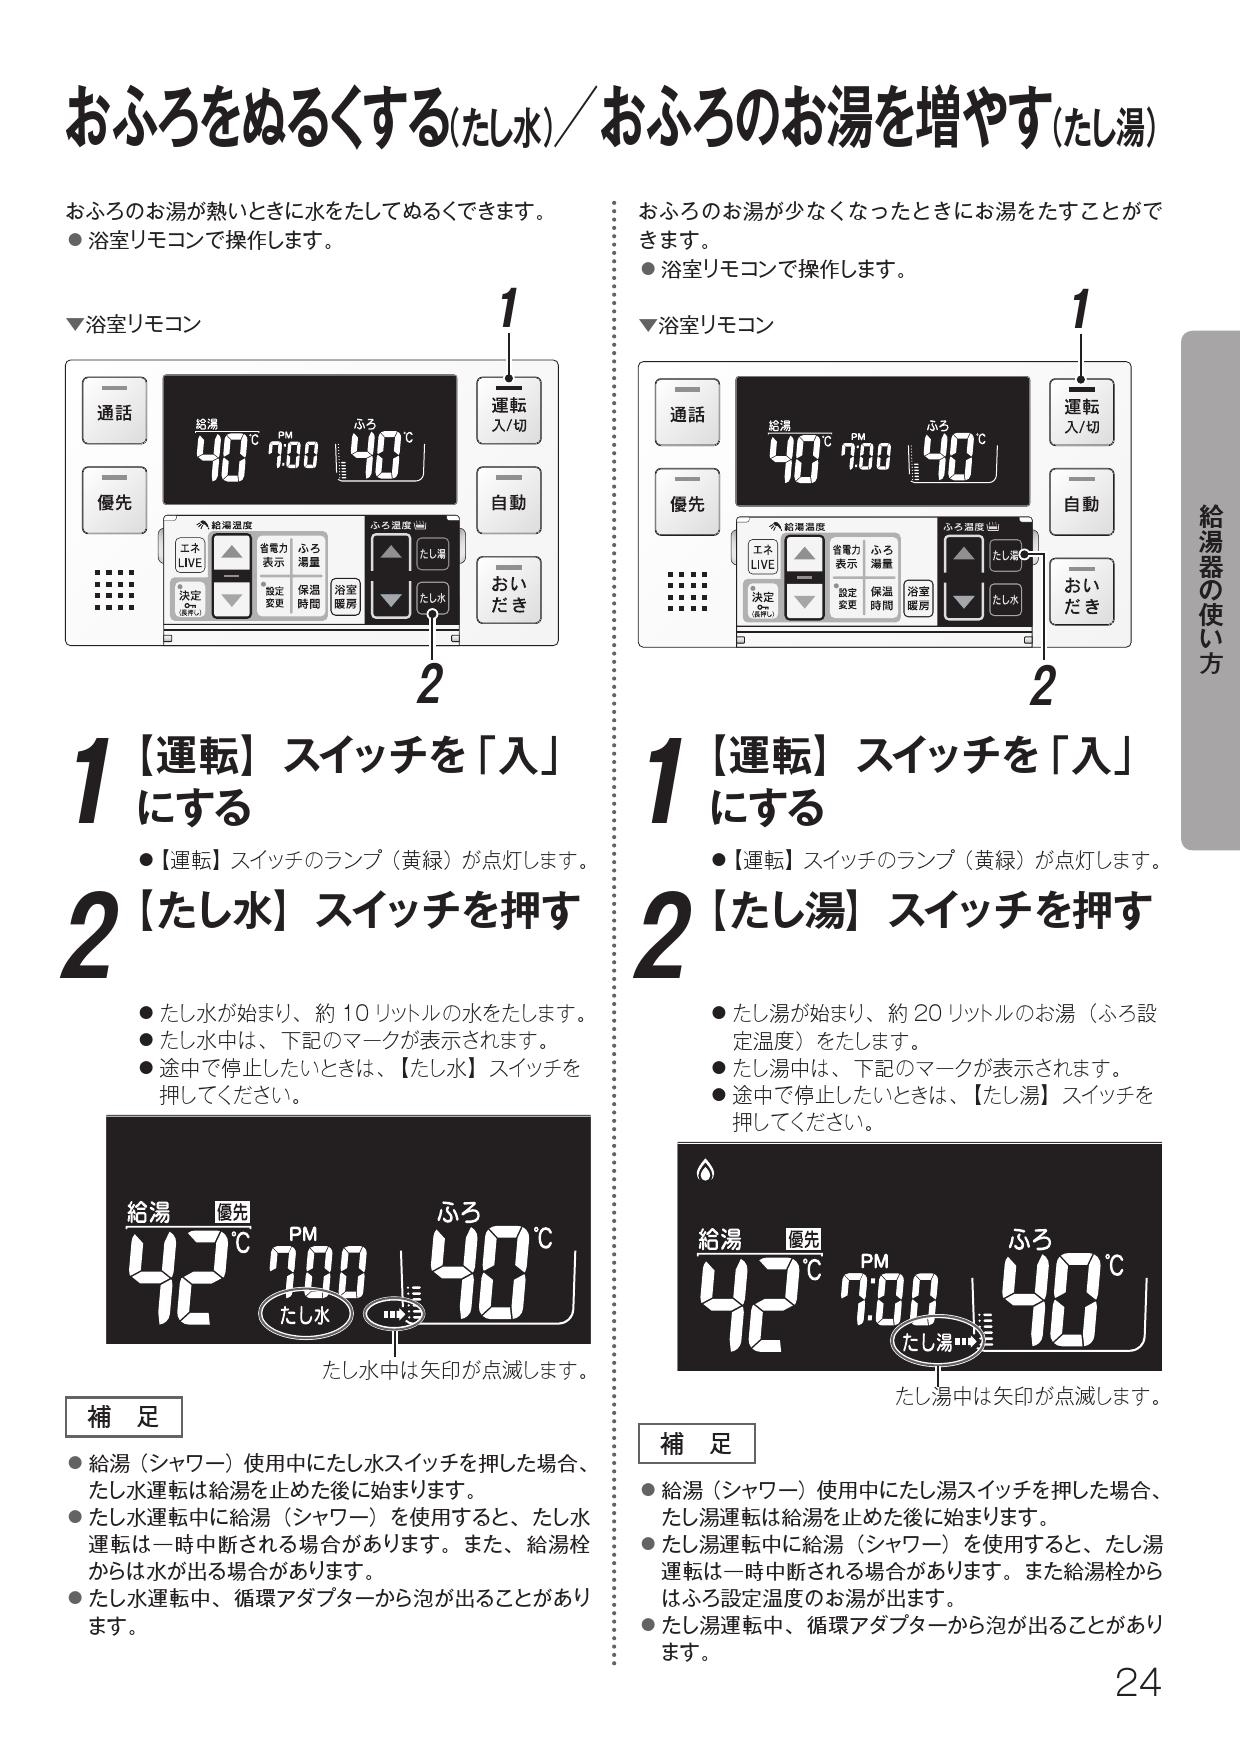 スーパーセール Rinnai MBC-240VC A 240シリーズ ガスふろ給湯器用リモコンセット 浴室リモコン 台所リモコン 